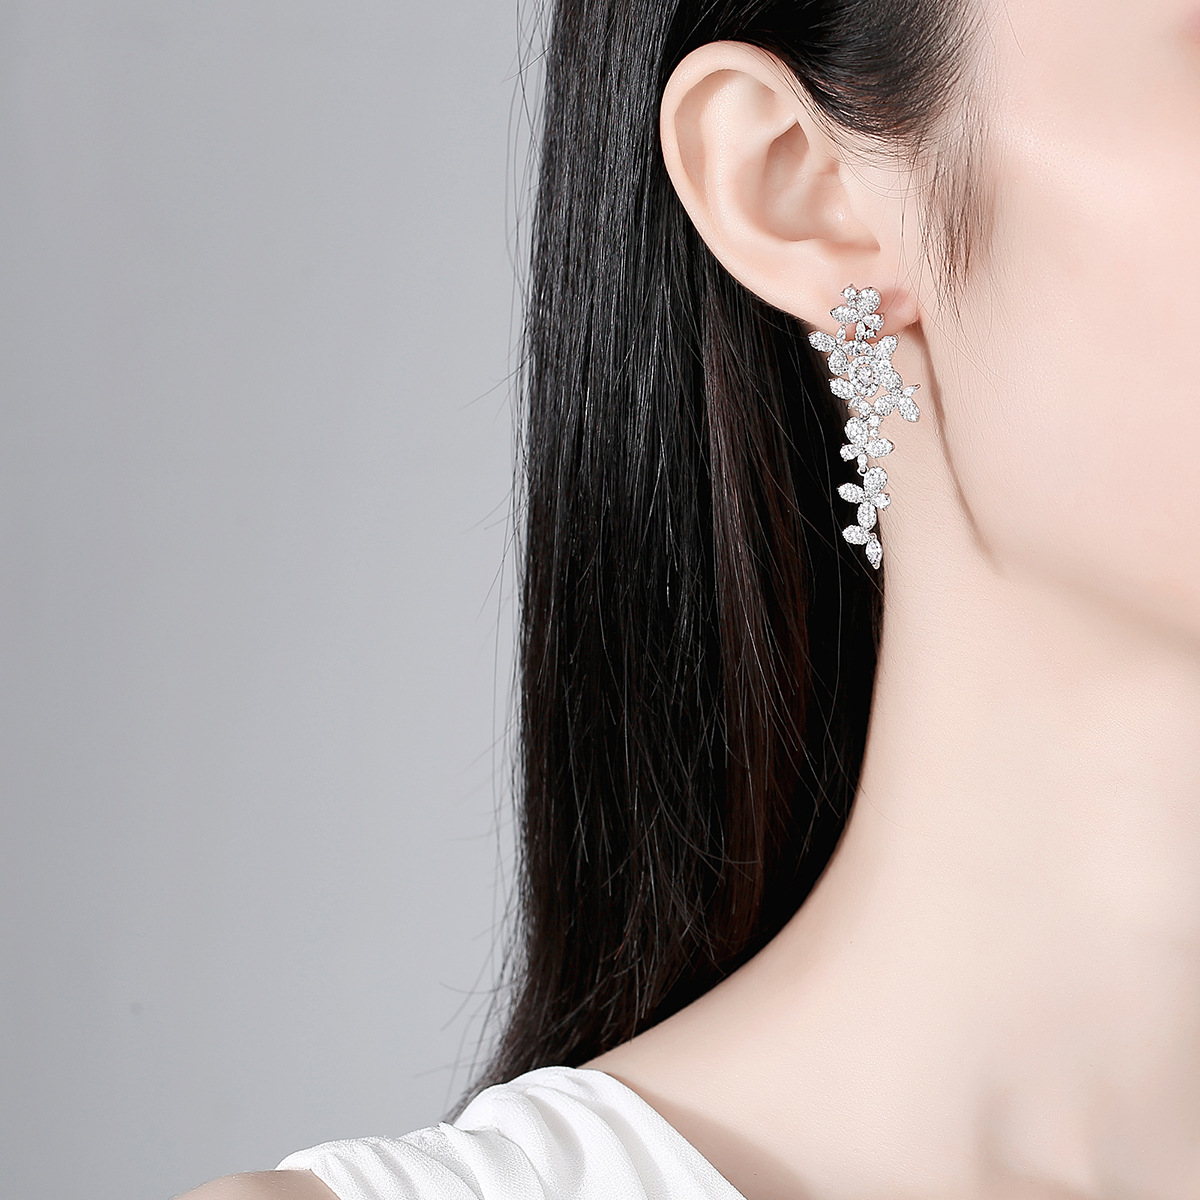 Tassels fashion earrings summer stud earrings